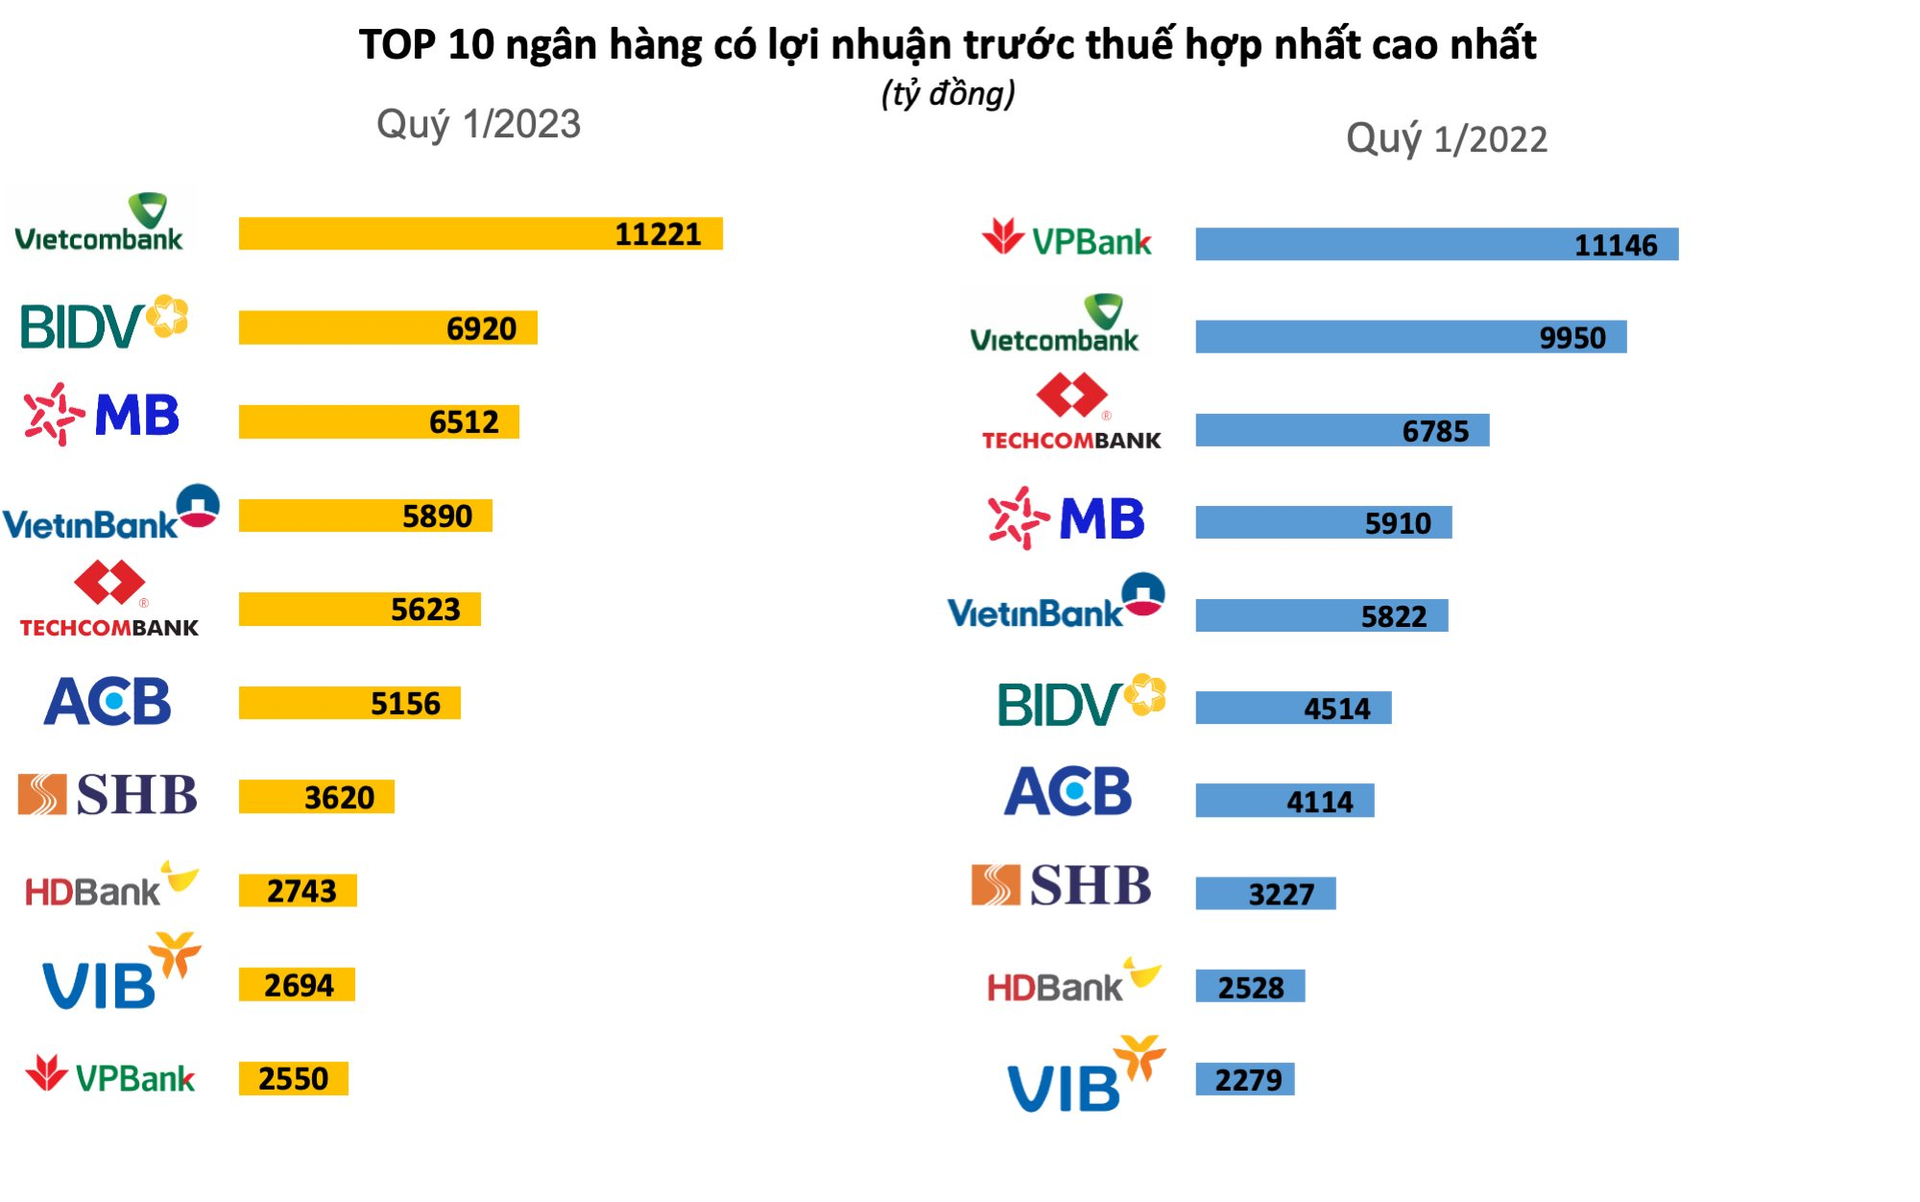 Ngân hàng năm ngoái vượt cả Vietcombank để lên vị trí quán quân lợi nhuận quý 1, năm nay rớt thẳng xuống Top 10 - Ảnh 1.